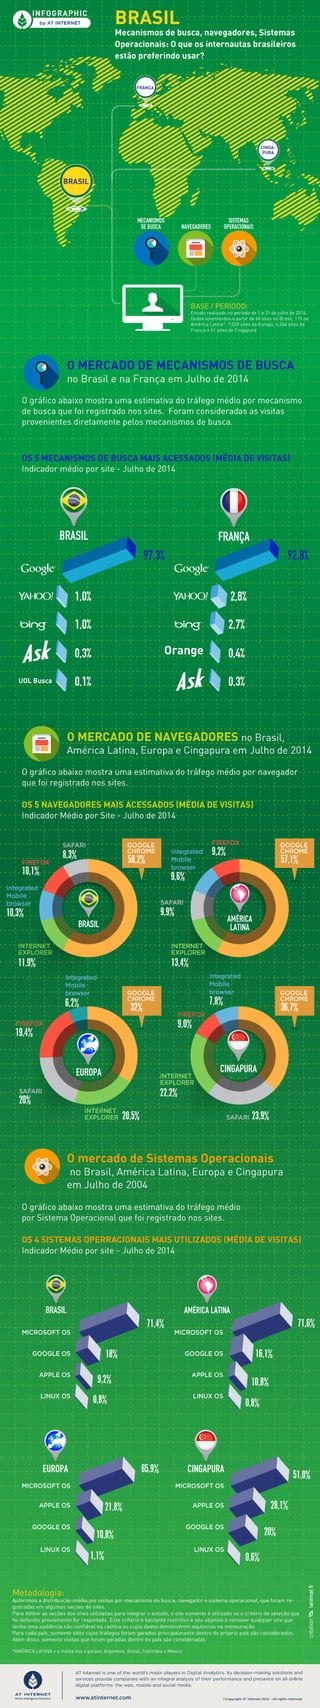 [Infográfico - Julho de 2014] Brasil: Mecanismos de busca, navegadores, Sistemas Operacionais 